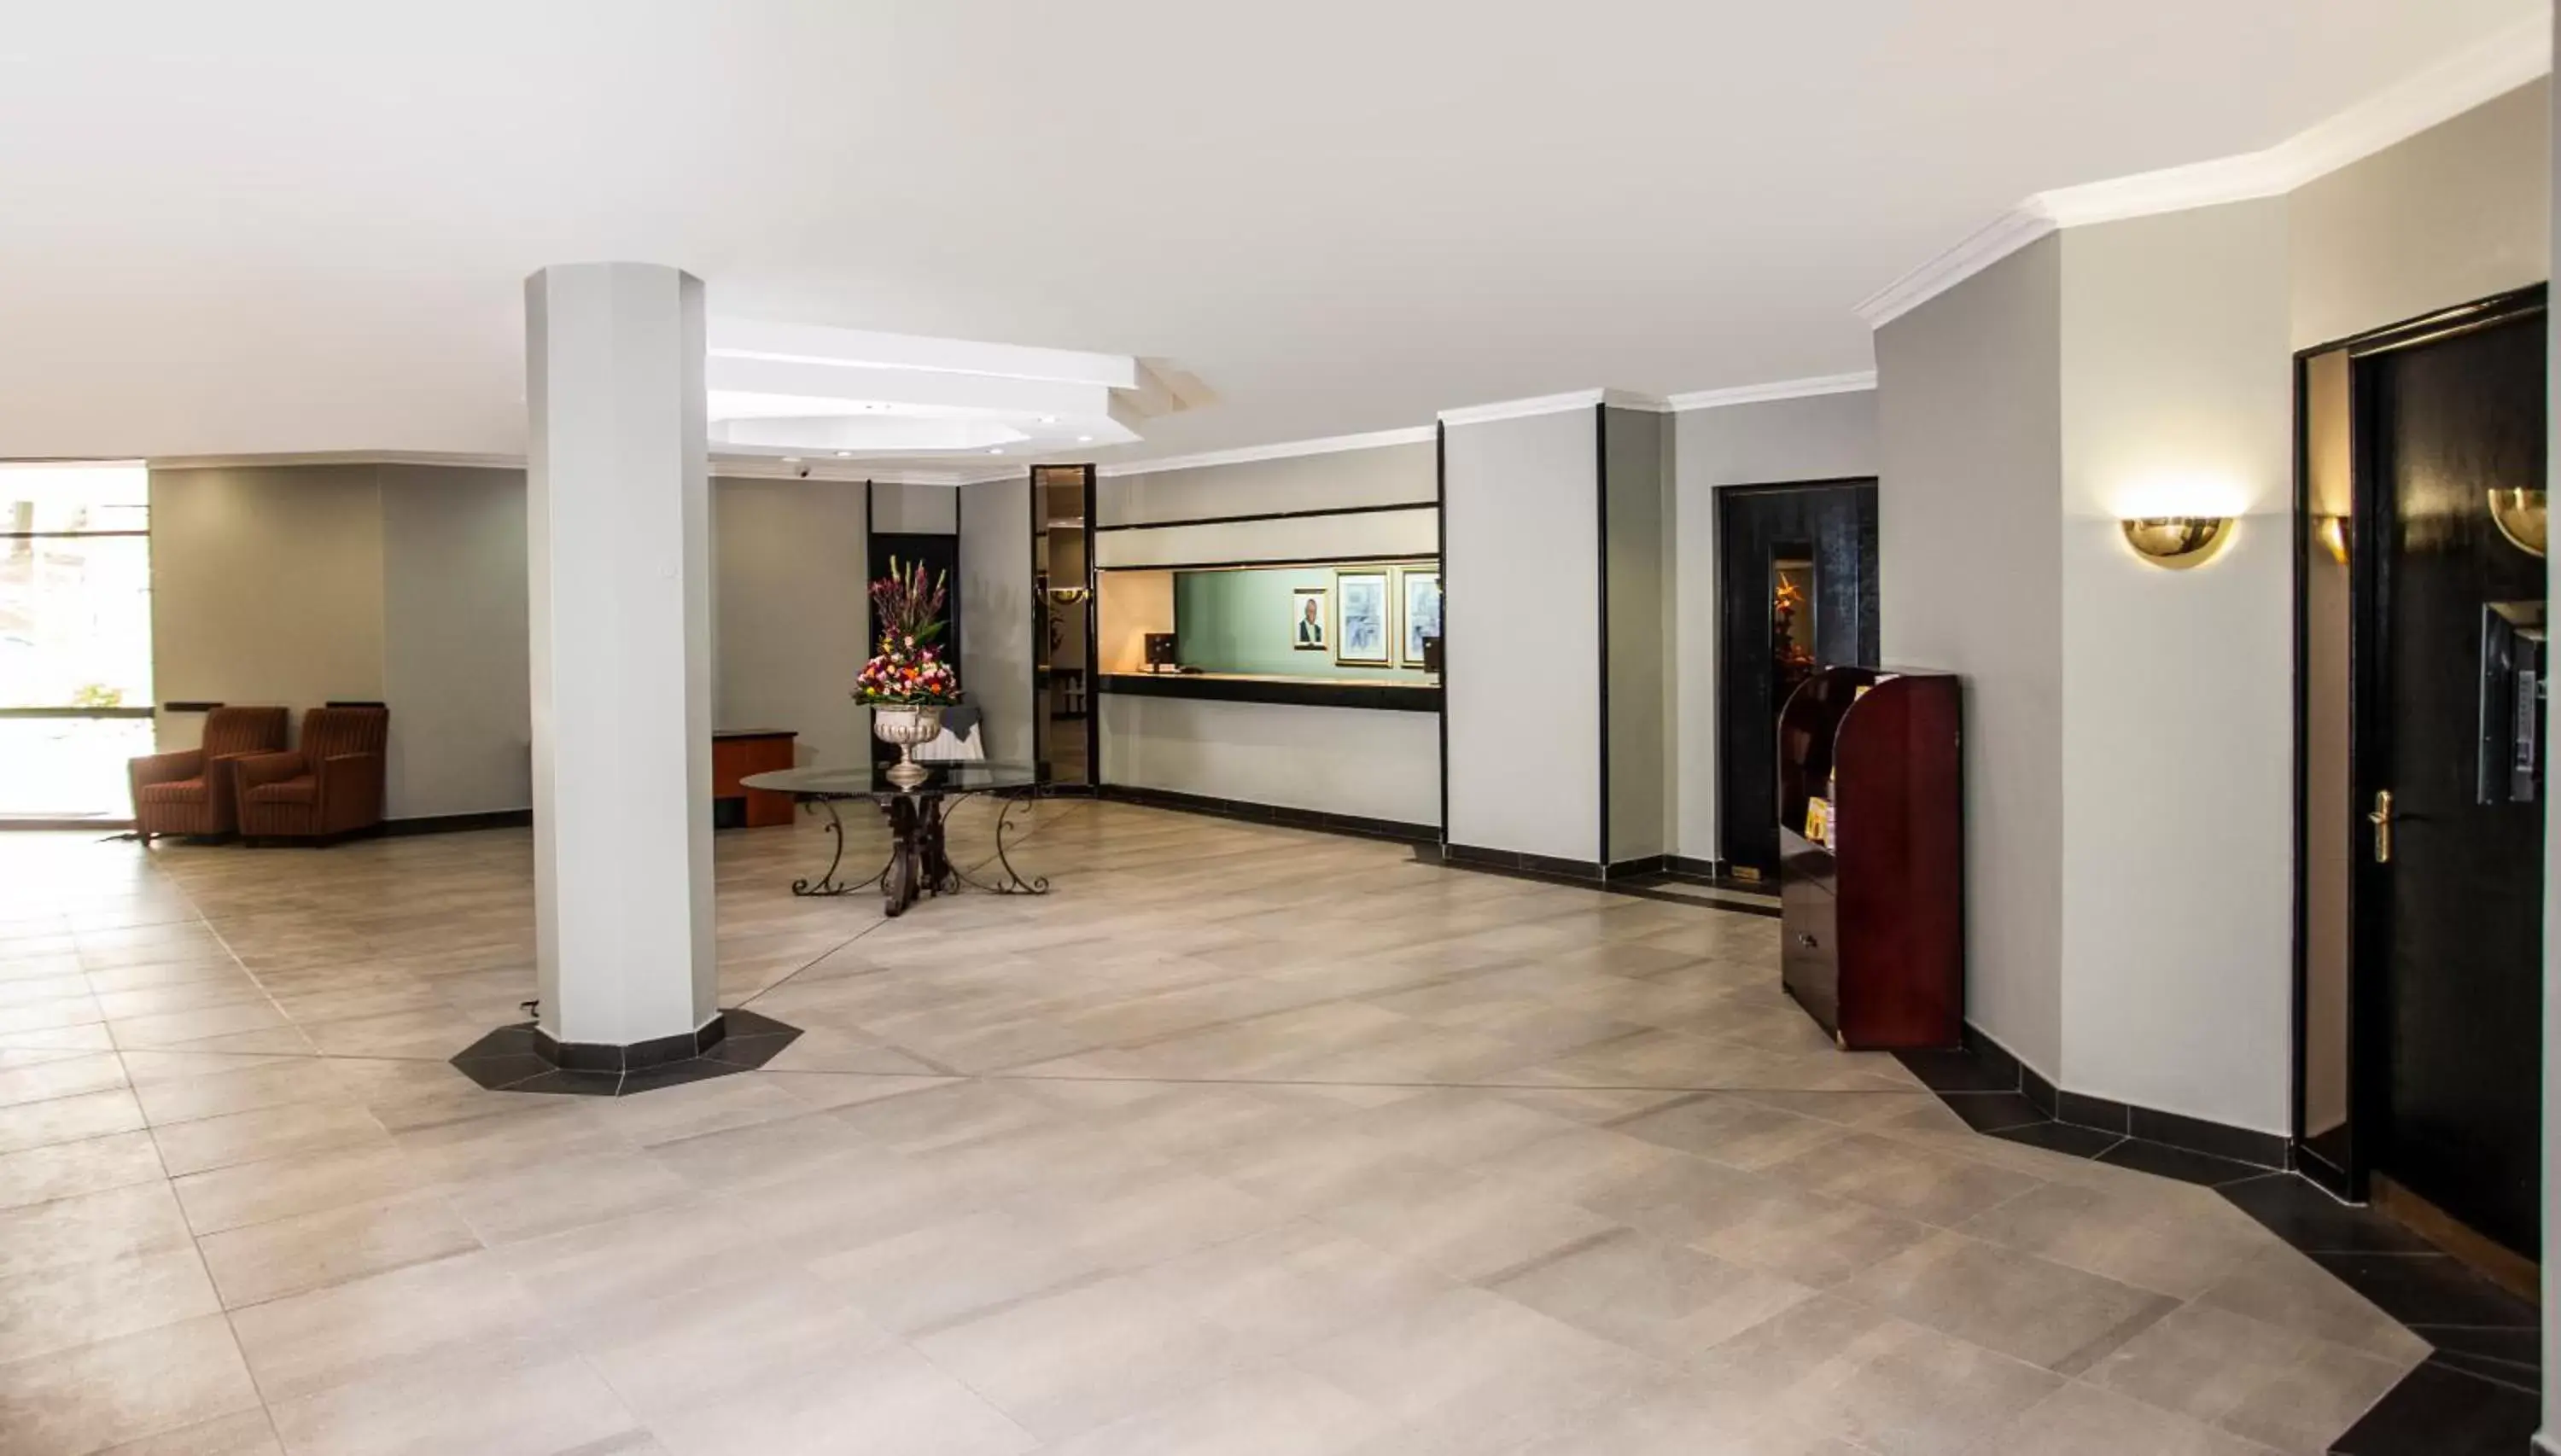 Lobby or reception in Avani Maseru Hotel